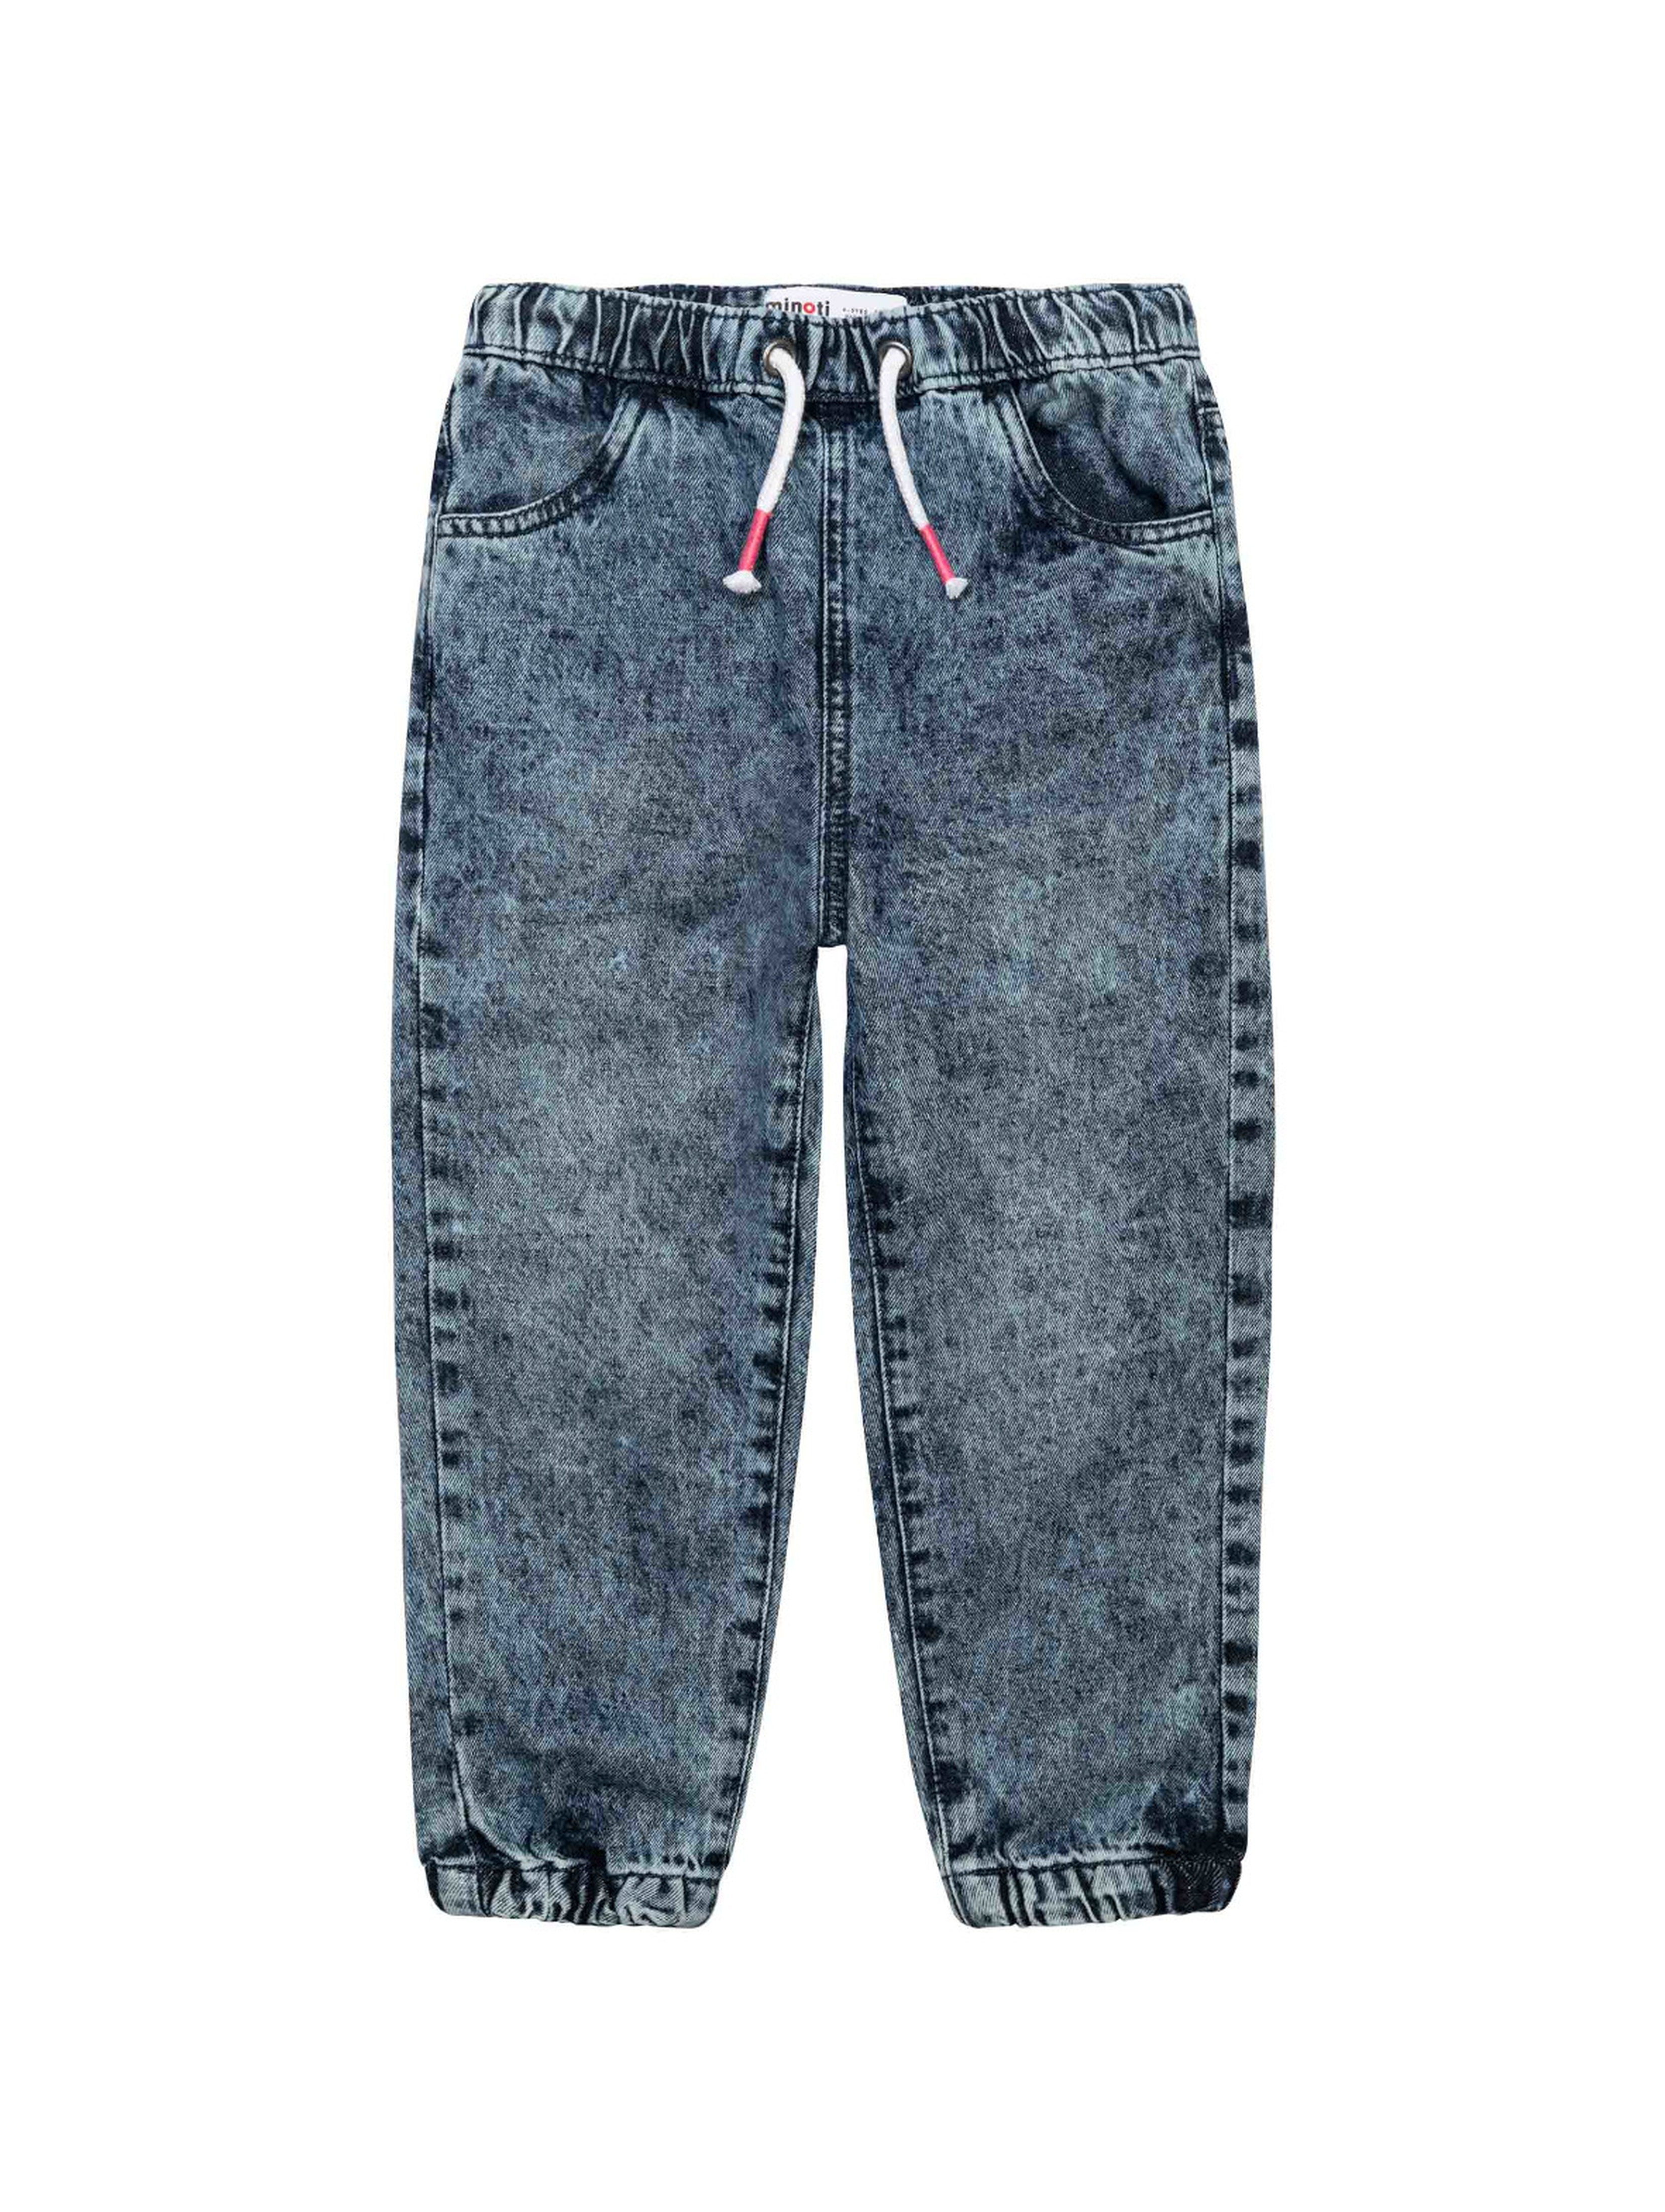 Spodnie dla dziewczynki jeansowe